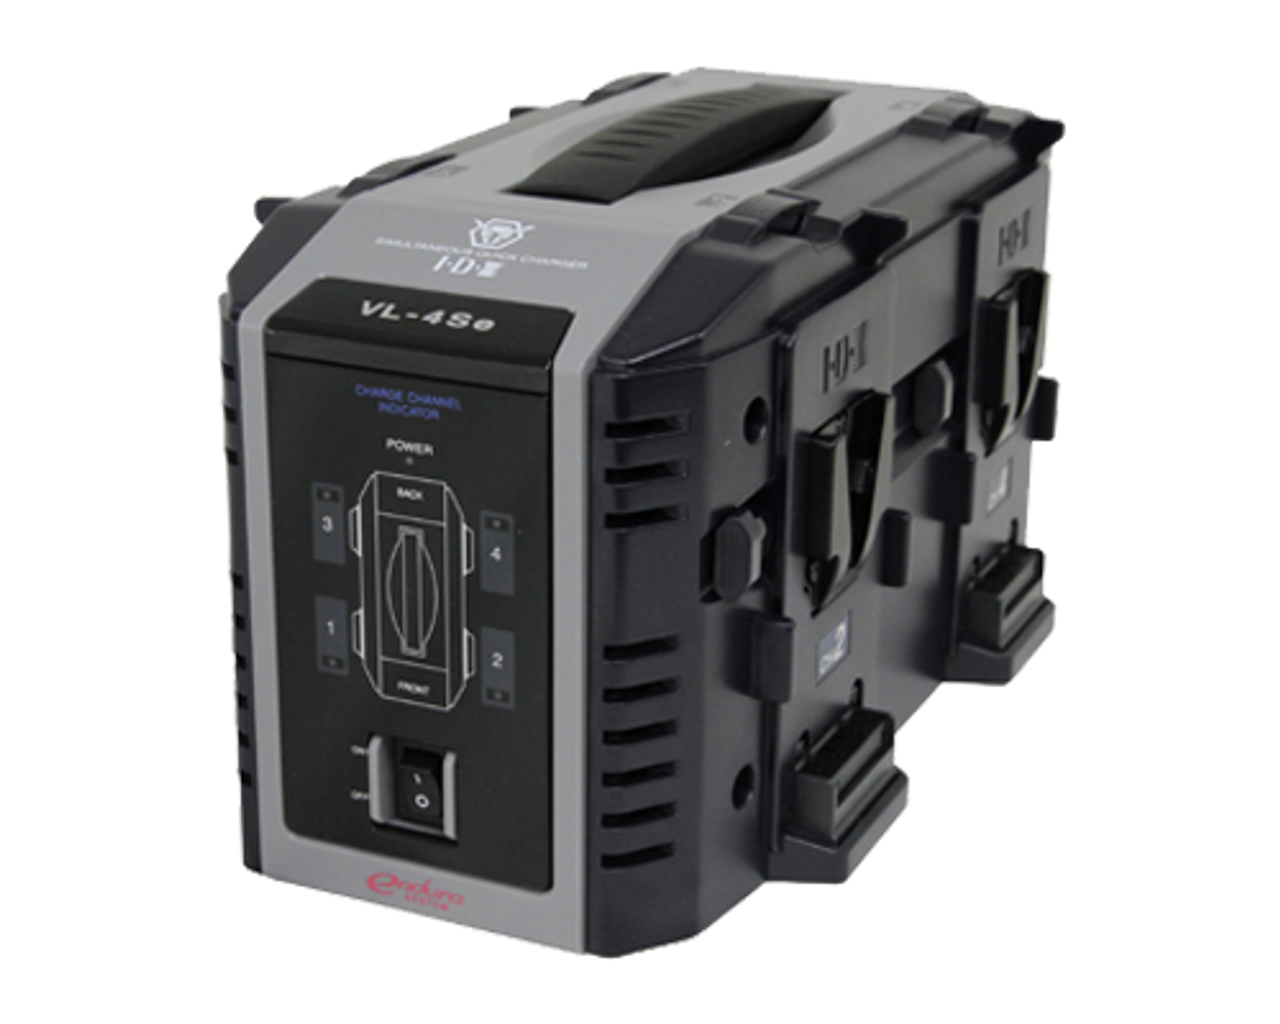 限定セール品 IDX 4ch同時急速充電器 VL-4Se ビデオカメラ